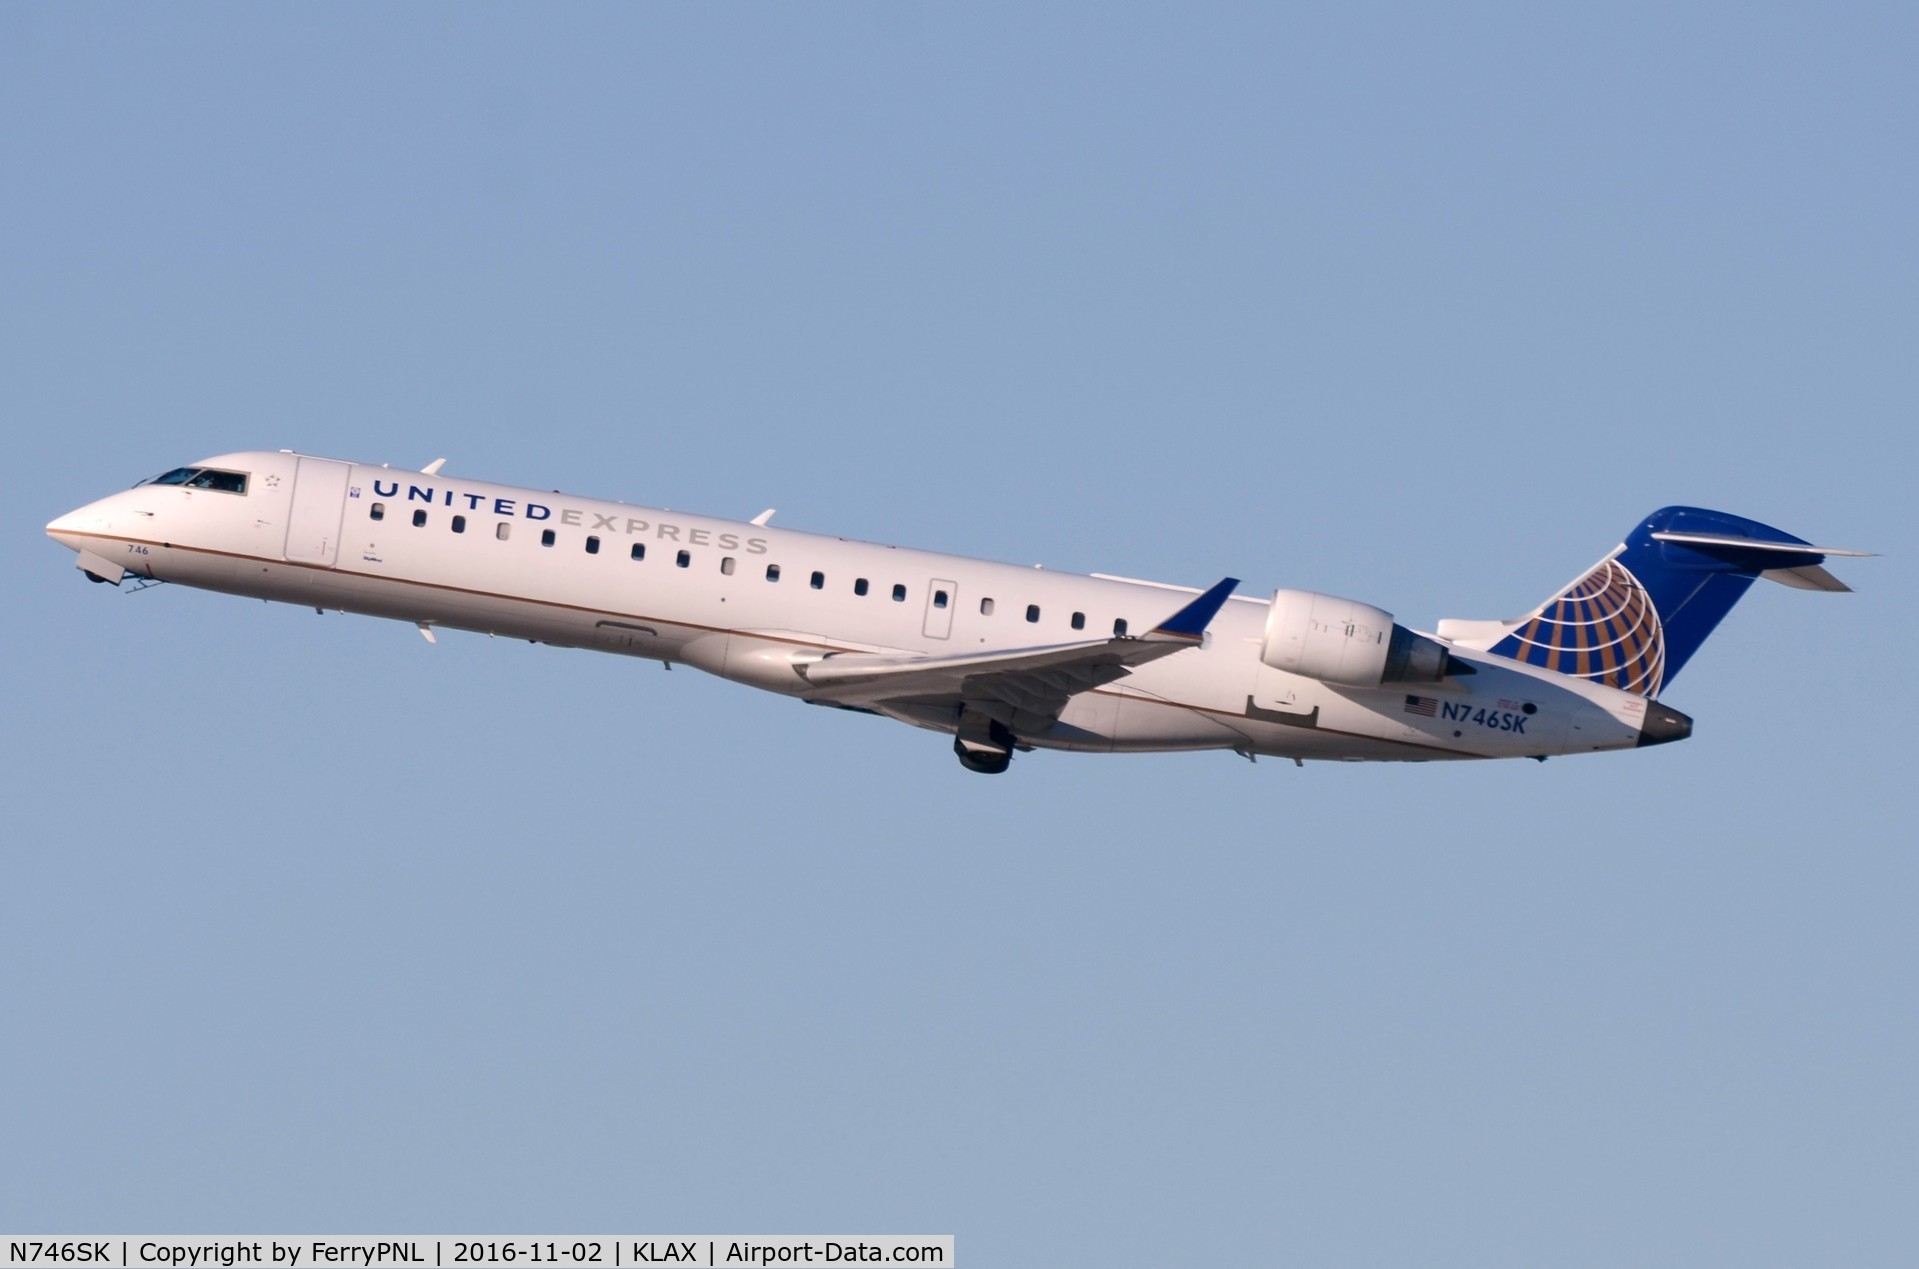 N746SK, 2005 Bombardier CRJ-700 (CL-600-2C10) Regional Jet C/N 10202, United Express CL700